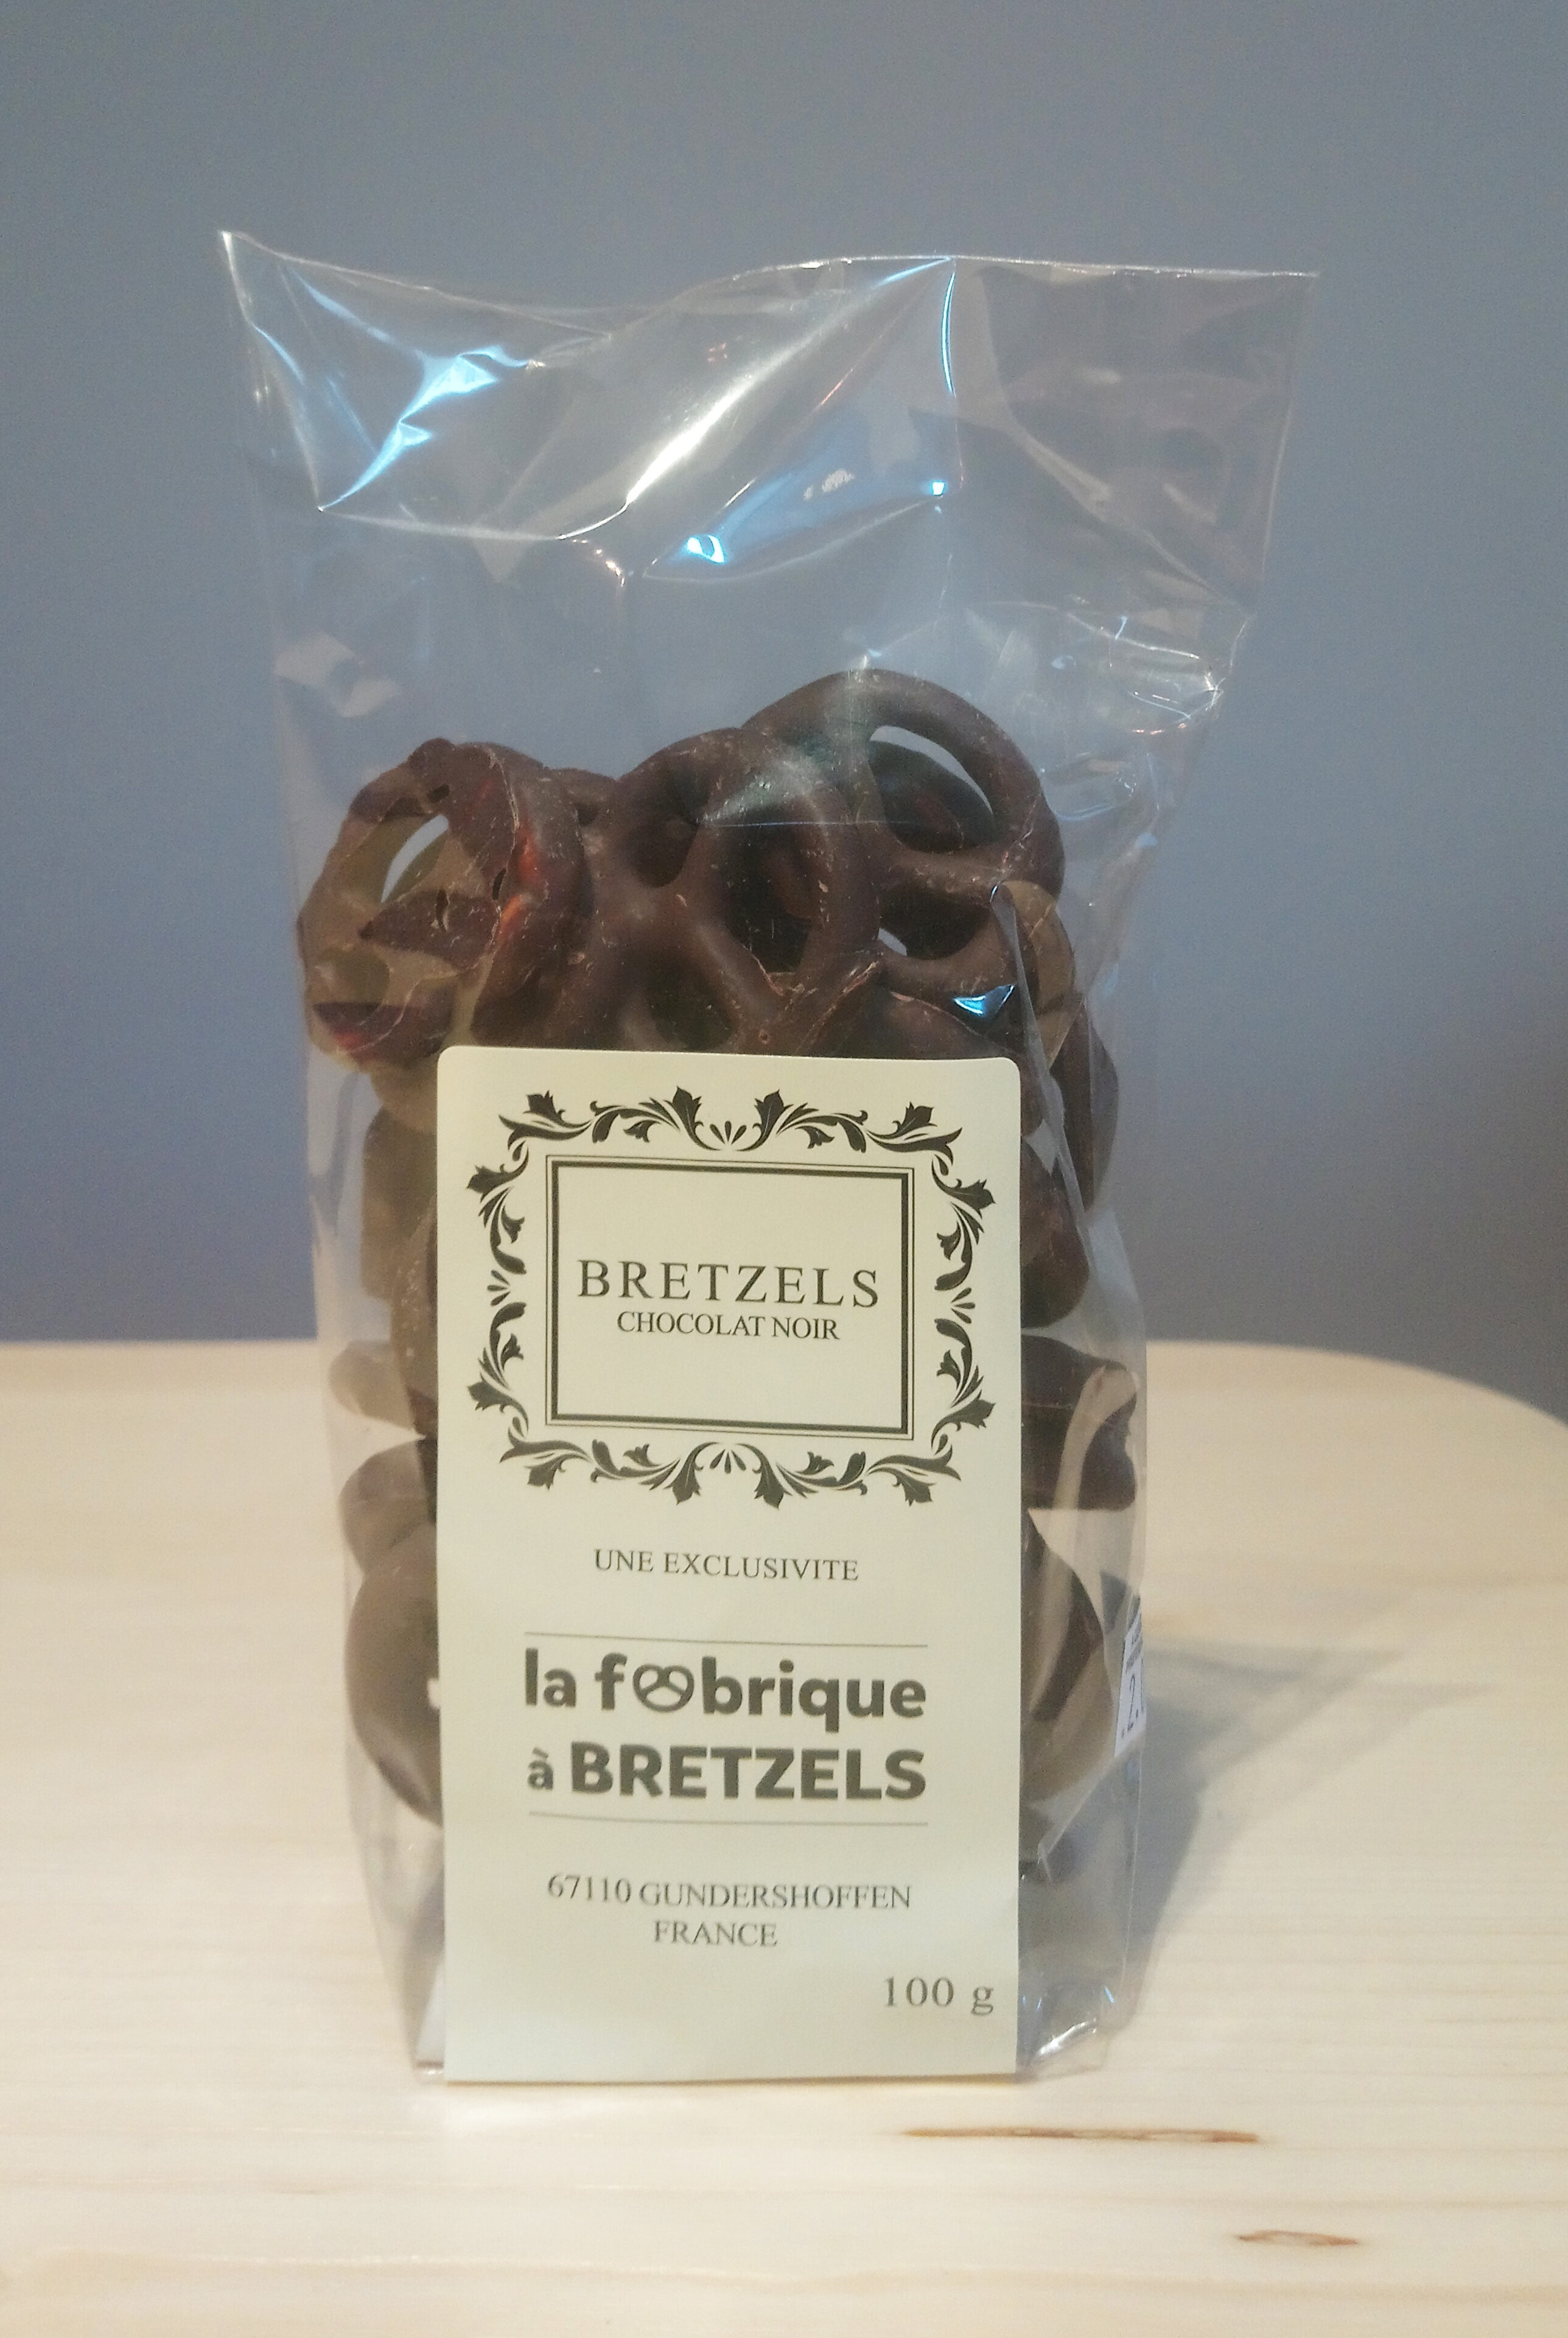 Sachet bretzels au chocolat noir - Product - fr